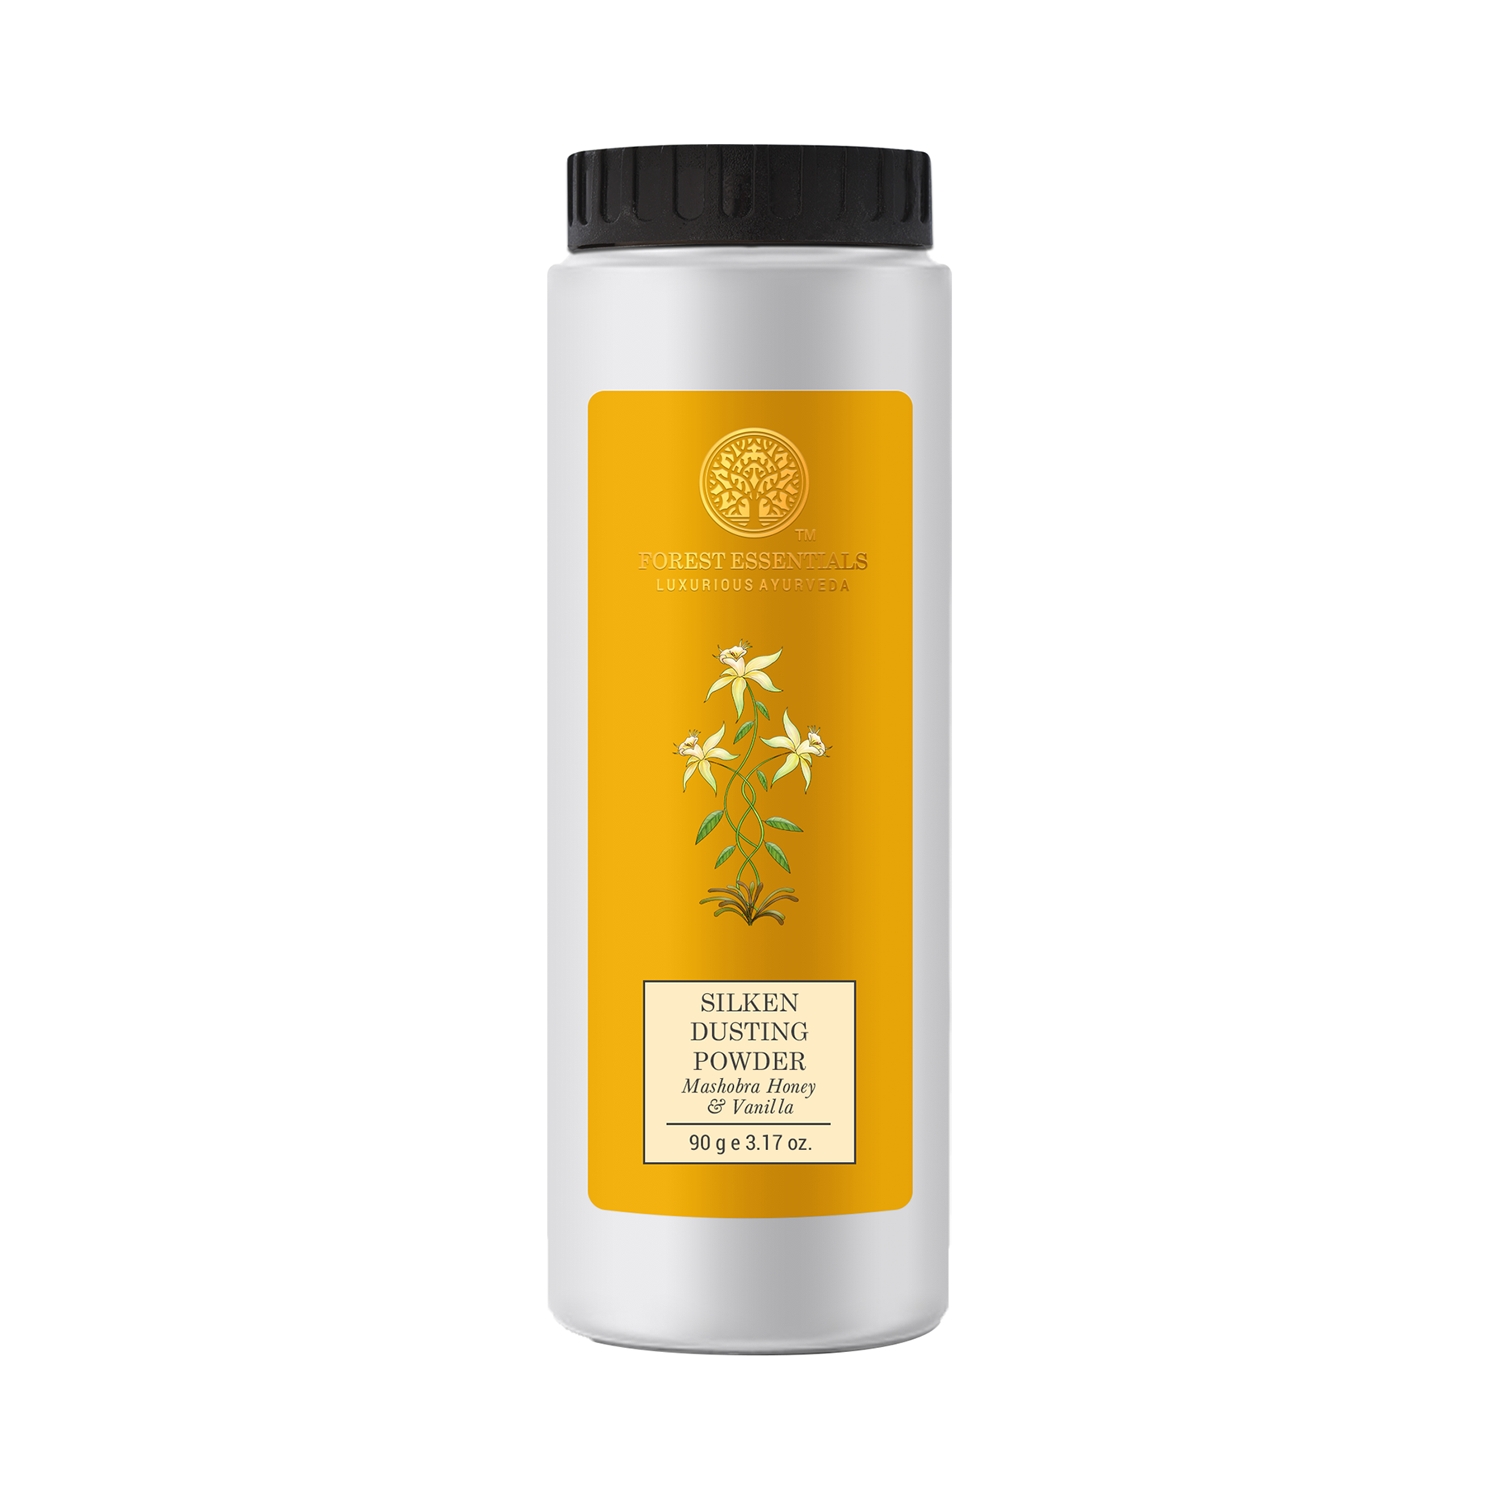 Forest Essentials | Forest Essentials Mashobra Honey & Vanilla Silken Dusting Powder (90g)